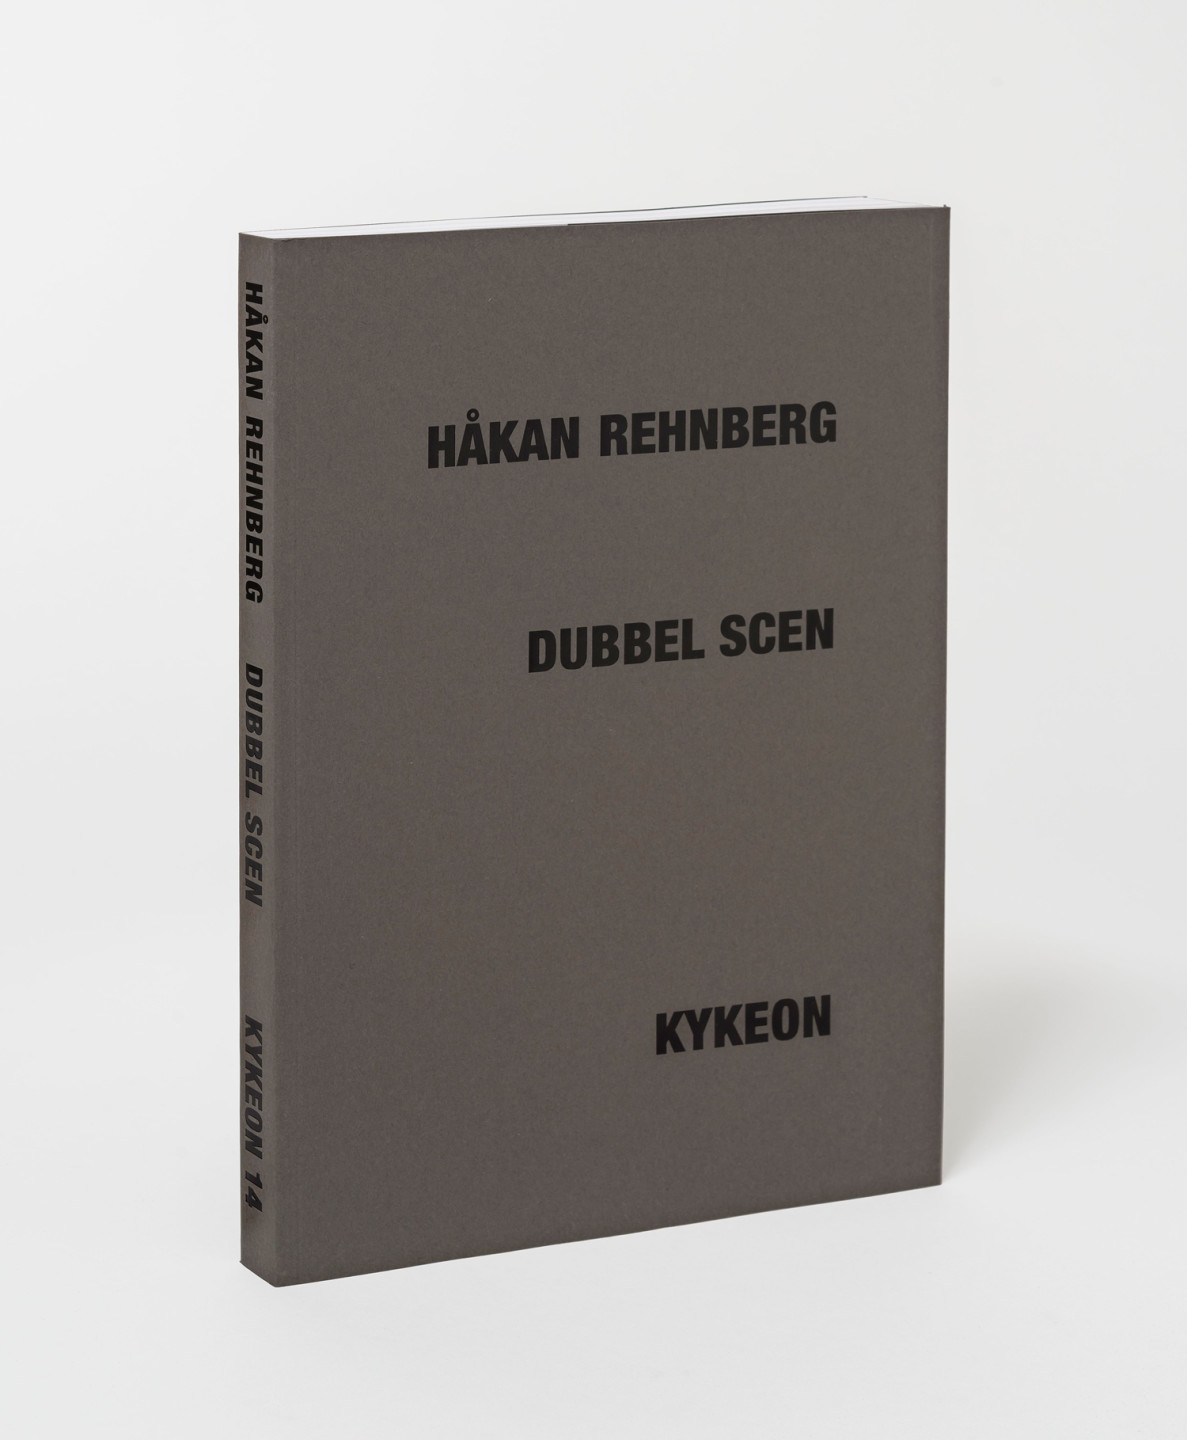 Katalog till utställningen Håkan Rehnberg – Dubbel scen